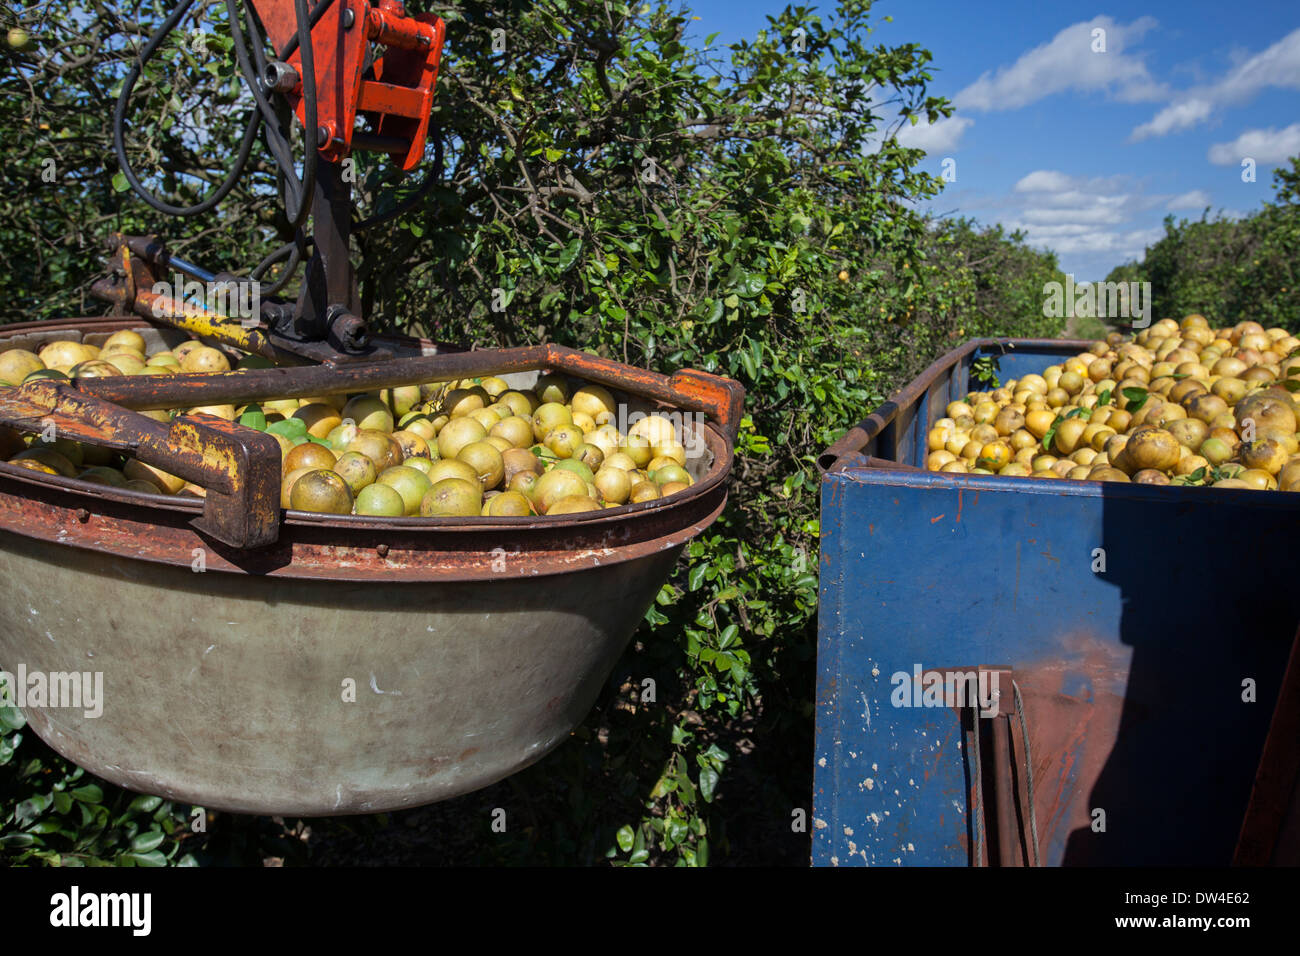 Fort Pierce, Florida - Grapefruit wird Saft im Indian River Citrus Stadtteil an der Ostküste Floridas geerntet. Stockfoto